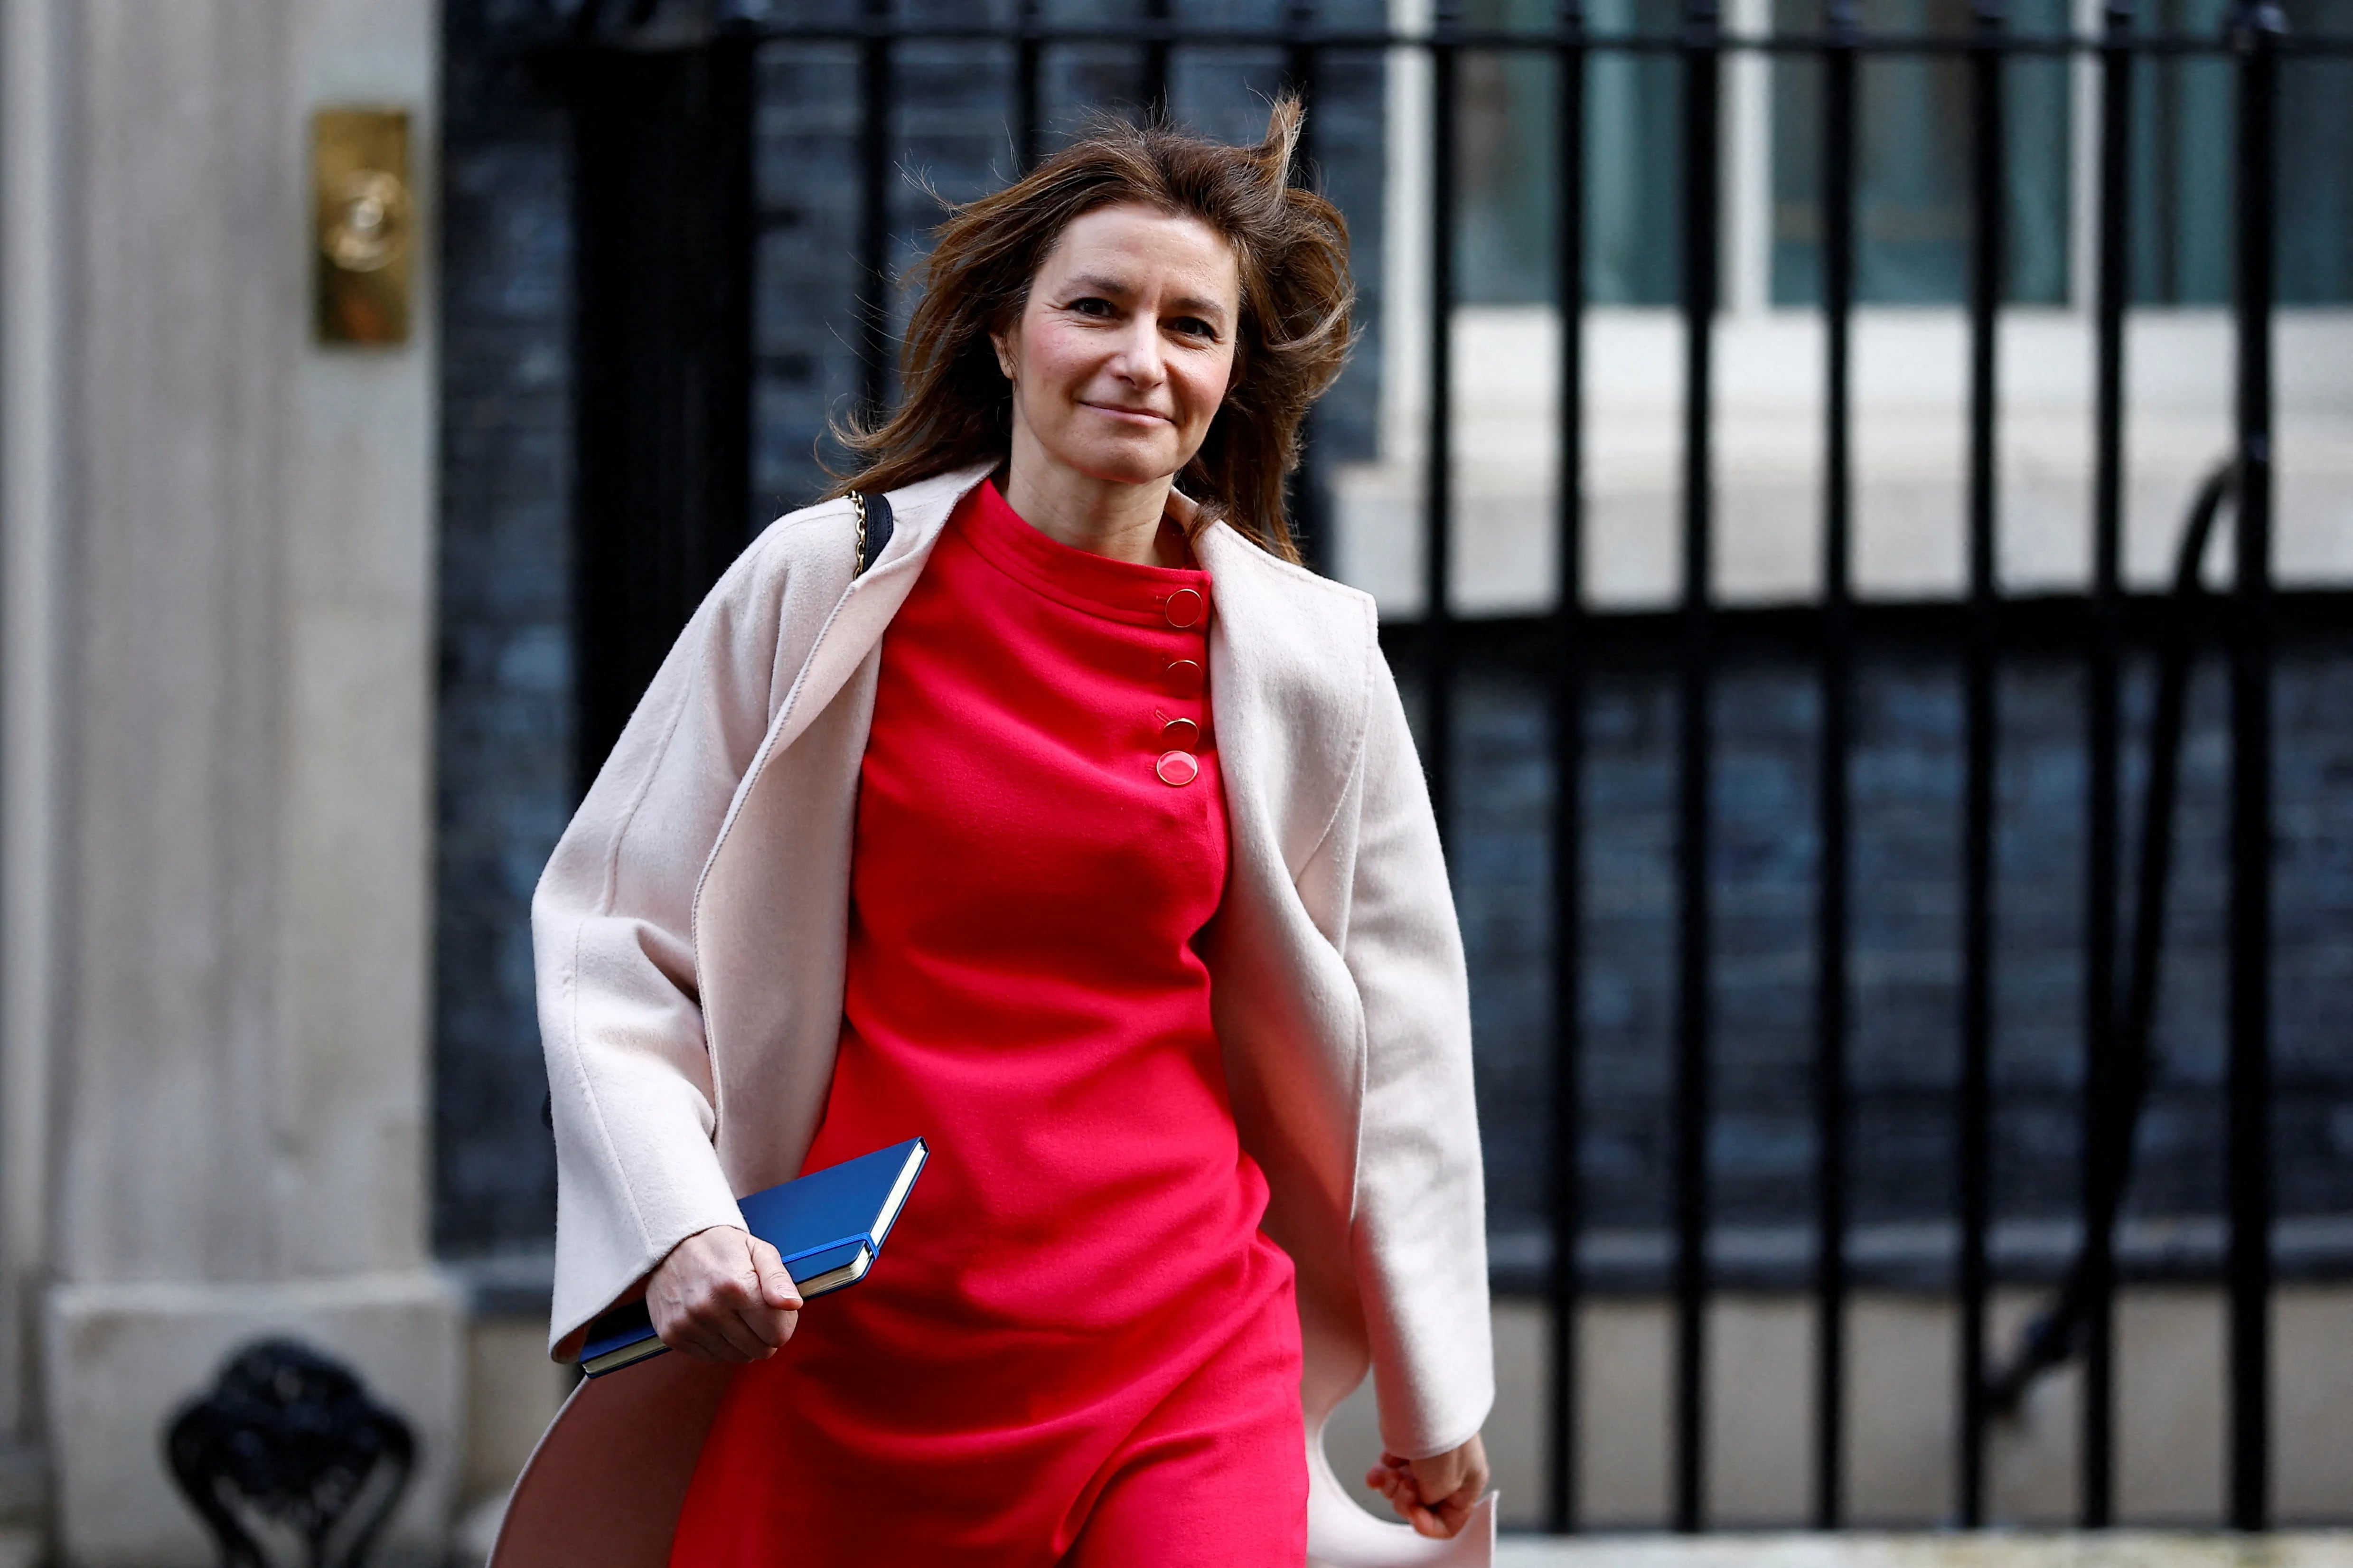 FOTO DE ARCHIVO: La secretaria de Estado británica para la Cultura, los Medios y el Deporte, Lucy Frazer, camina por Downing Street en Londres, Gran Bretaña, el 15 de marzo de 2023. REUTERS/Peter Nicholls/Foto de archivo